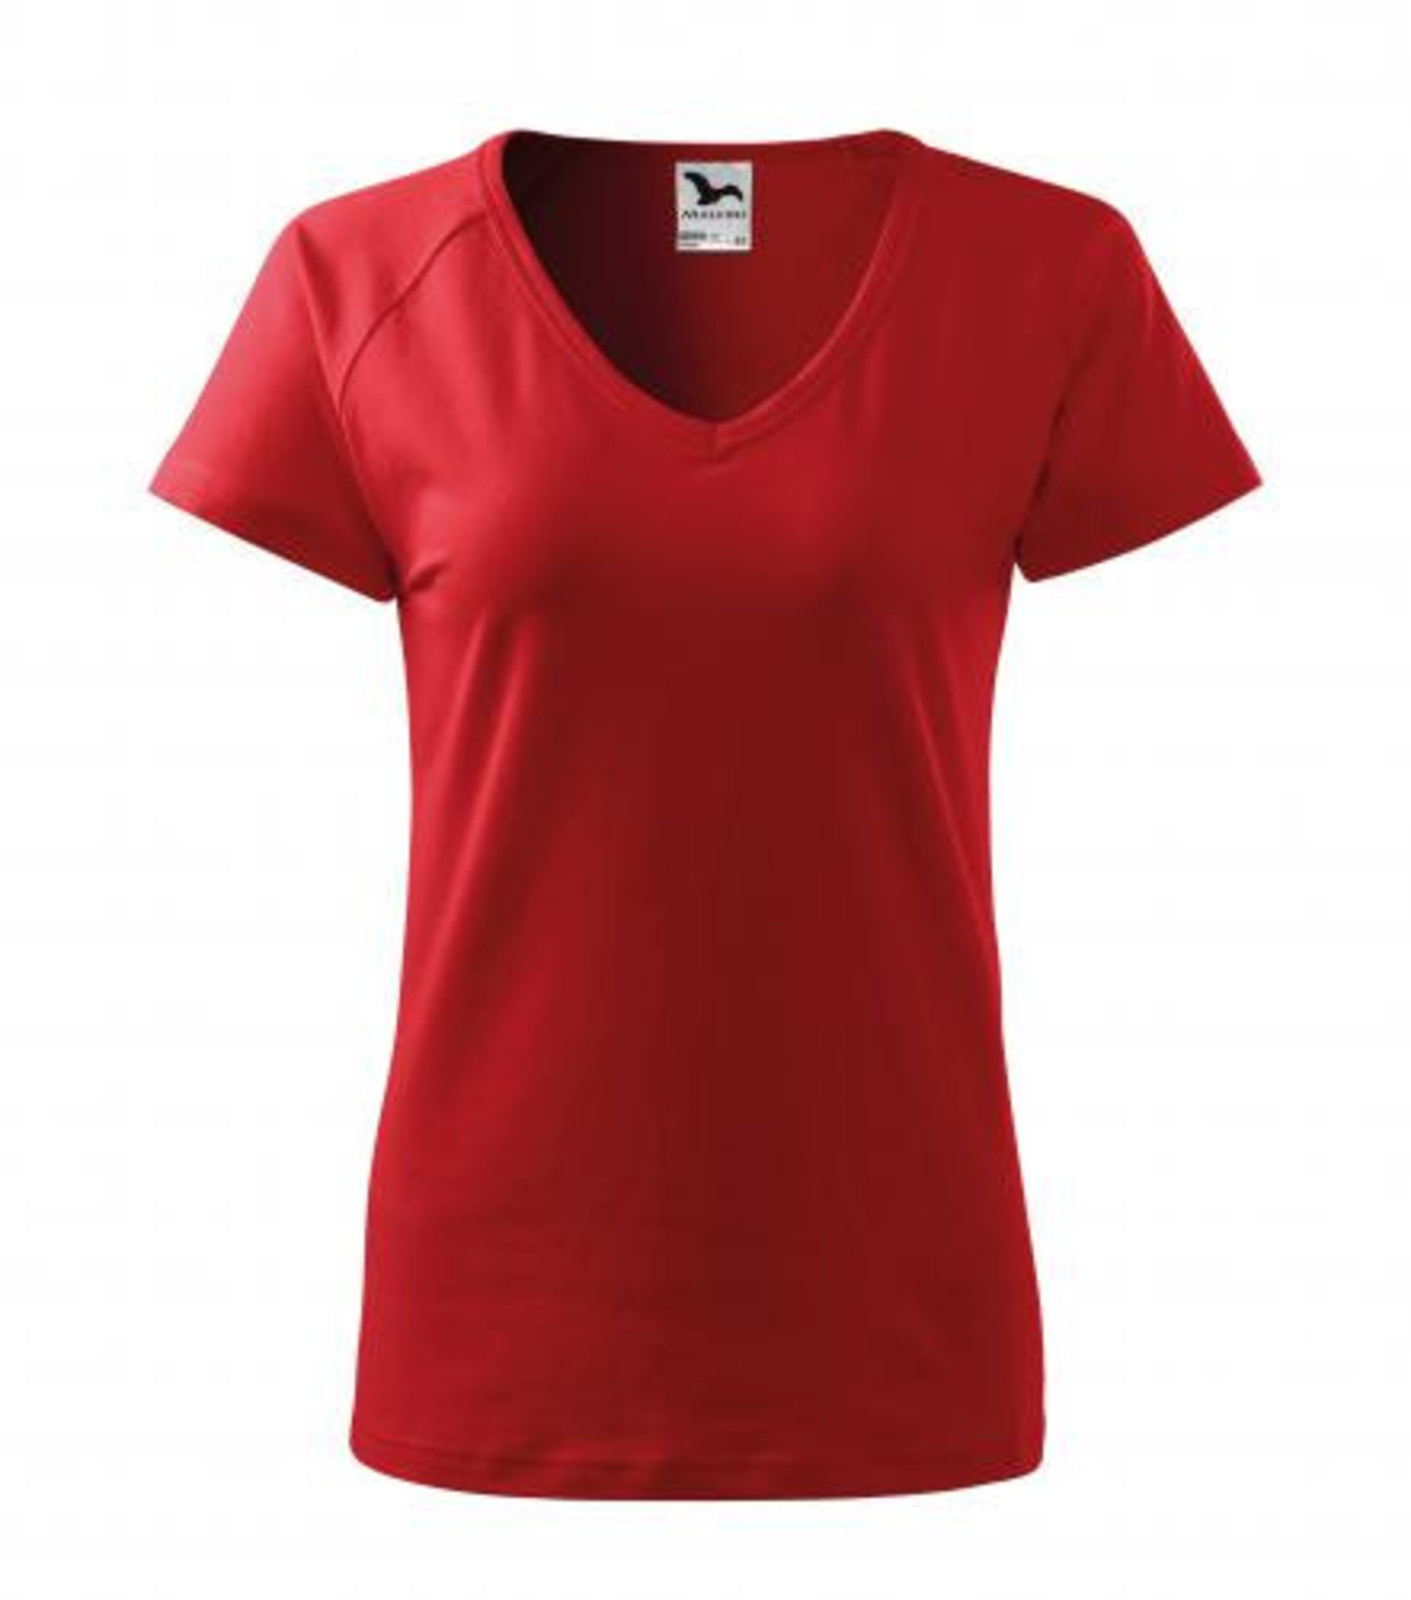 Dámske tričko s V výstrihom Adler Dream 128 - veľkosť: XS, farba: červená